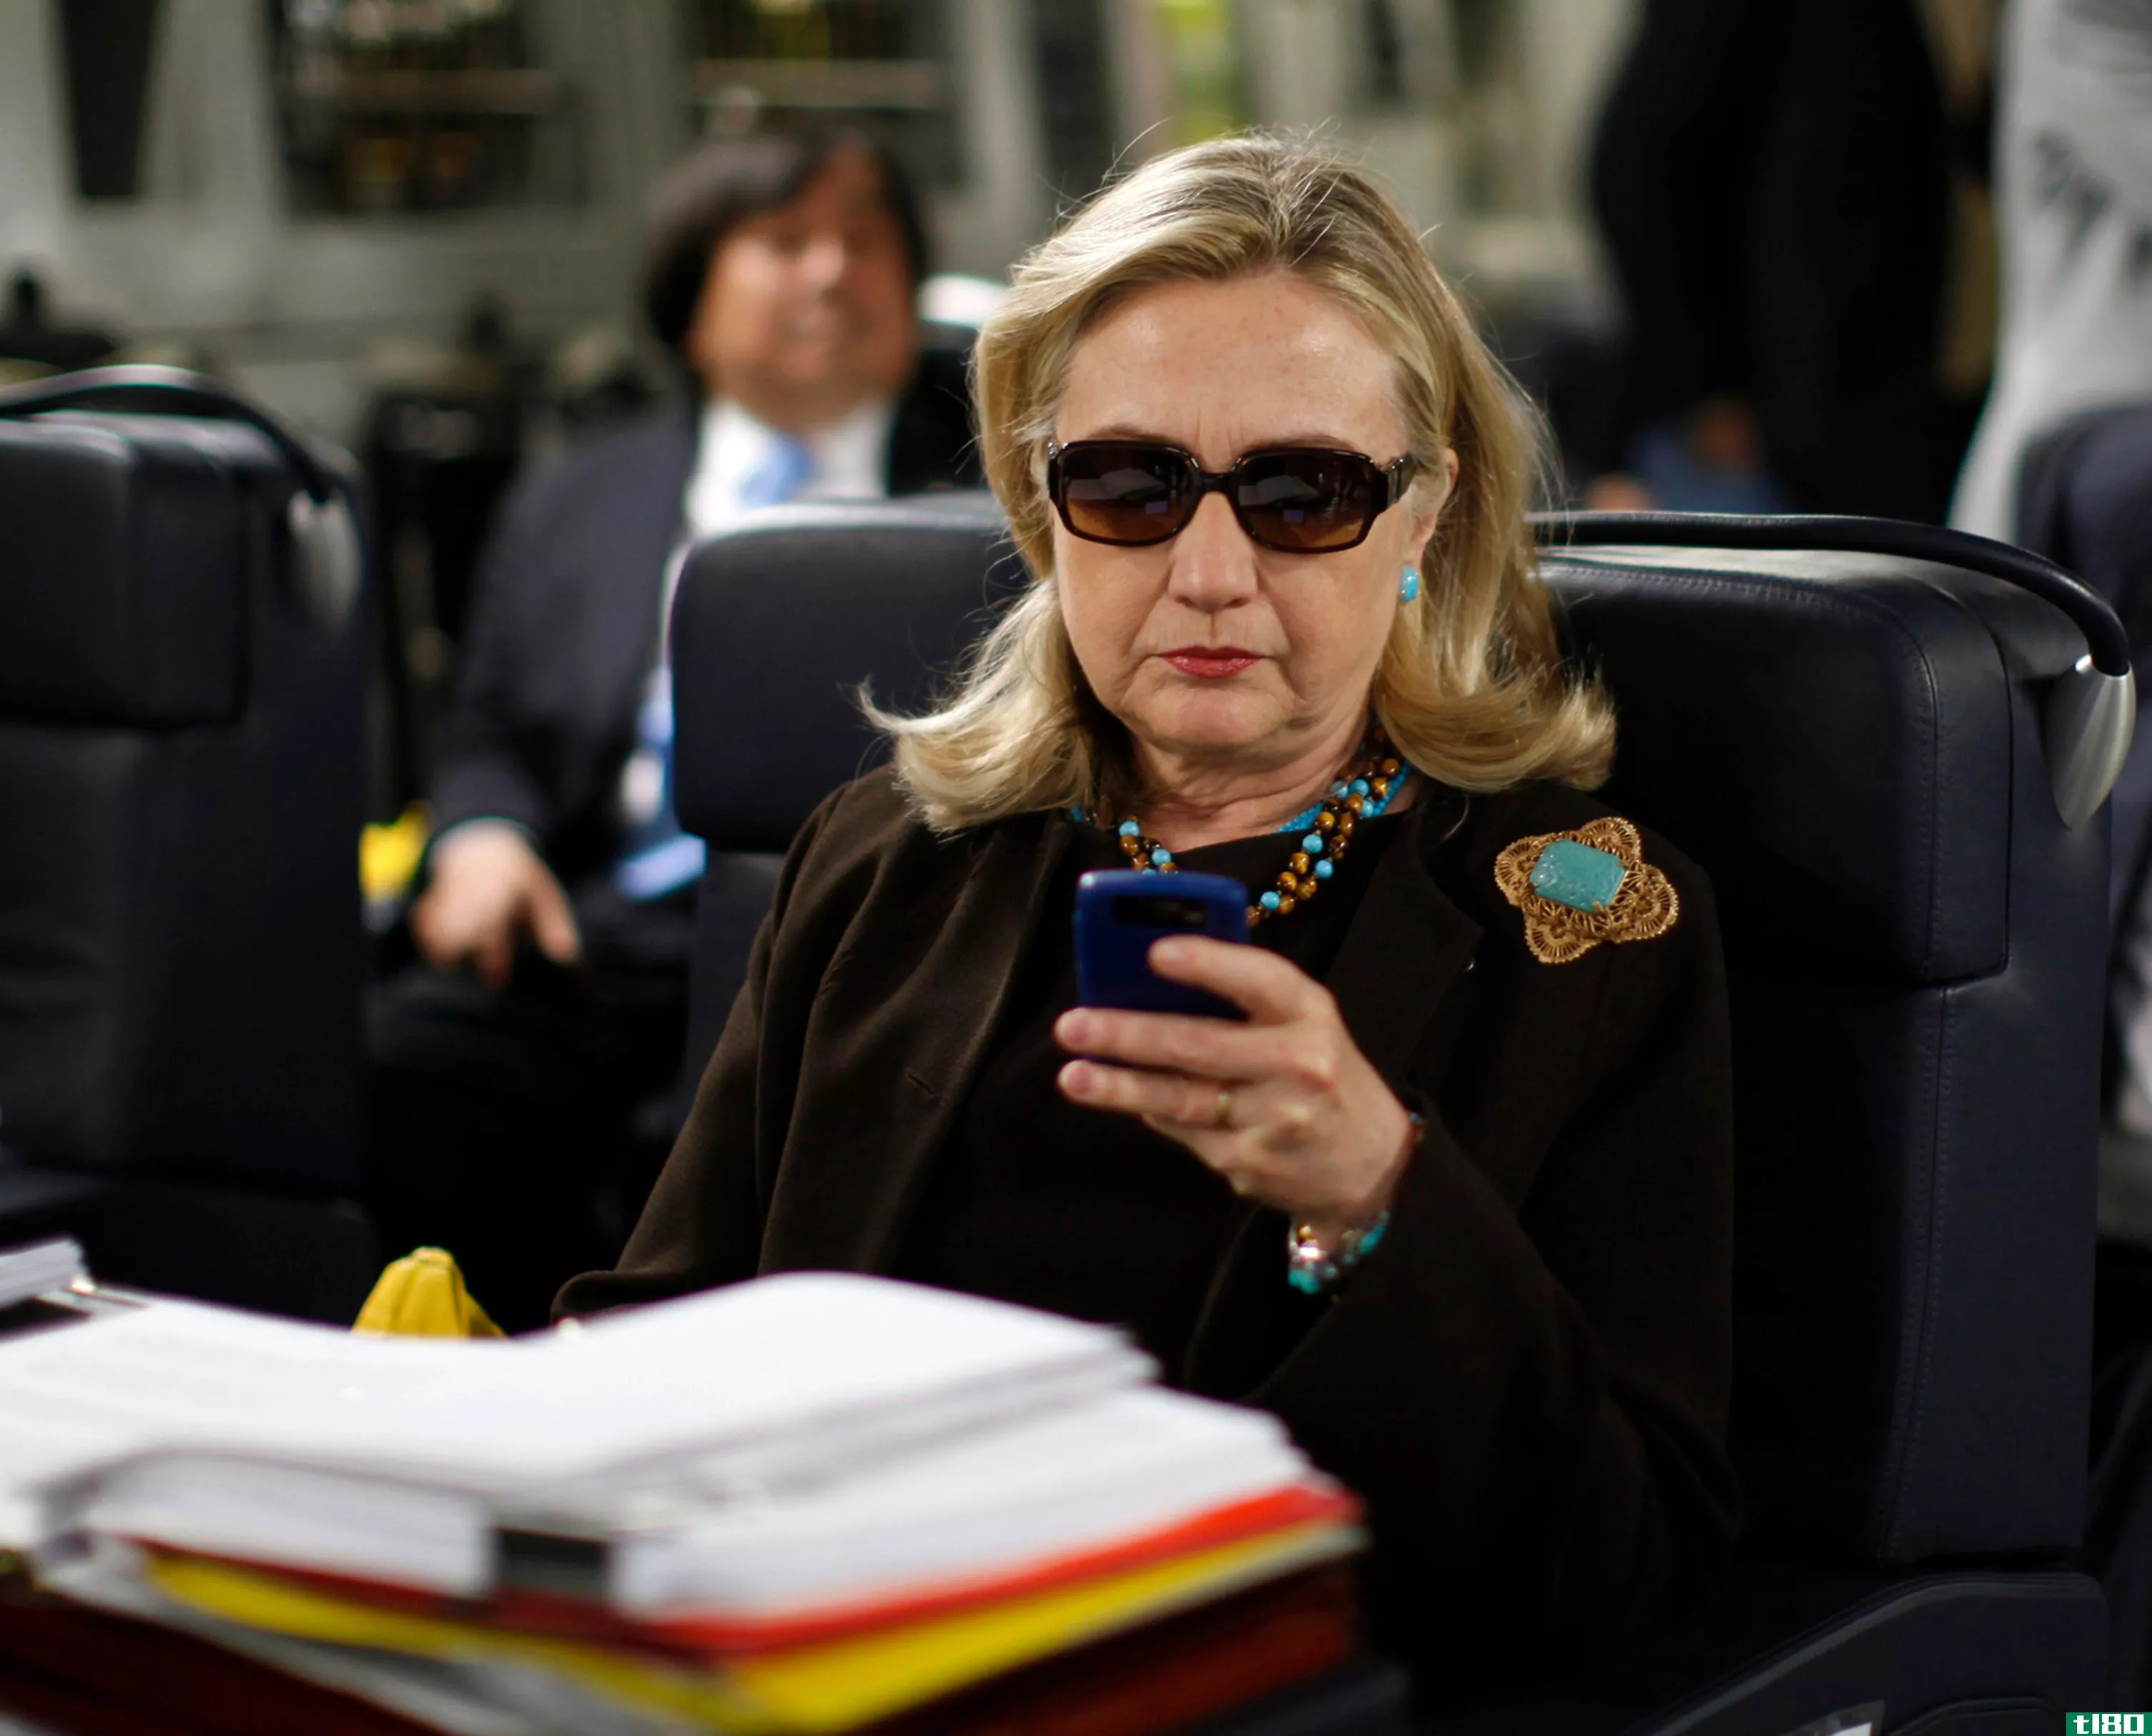 希拉里照片上的短信引发了人们对克林顿在国务院电子邮件习惯的质疑